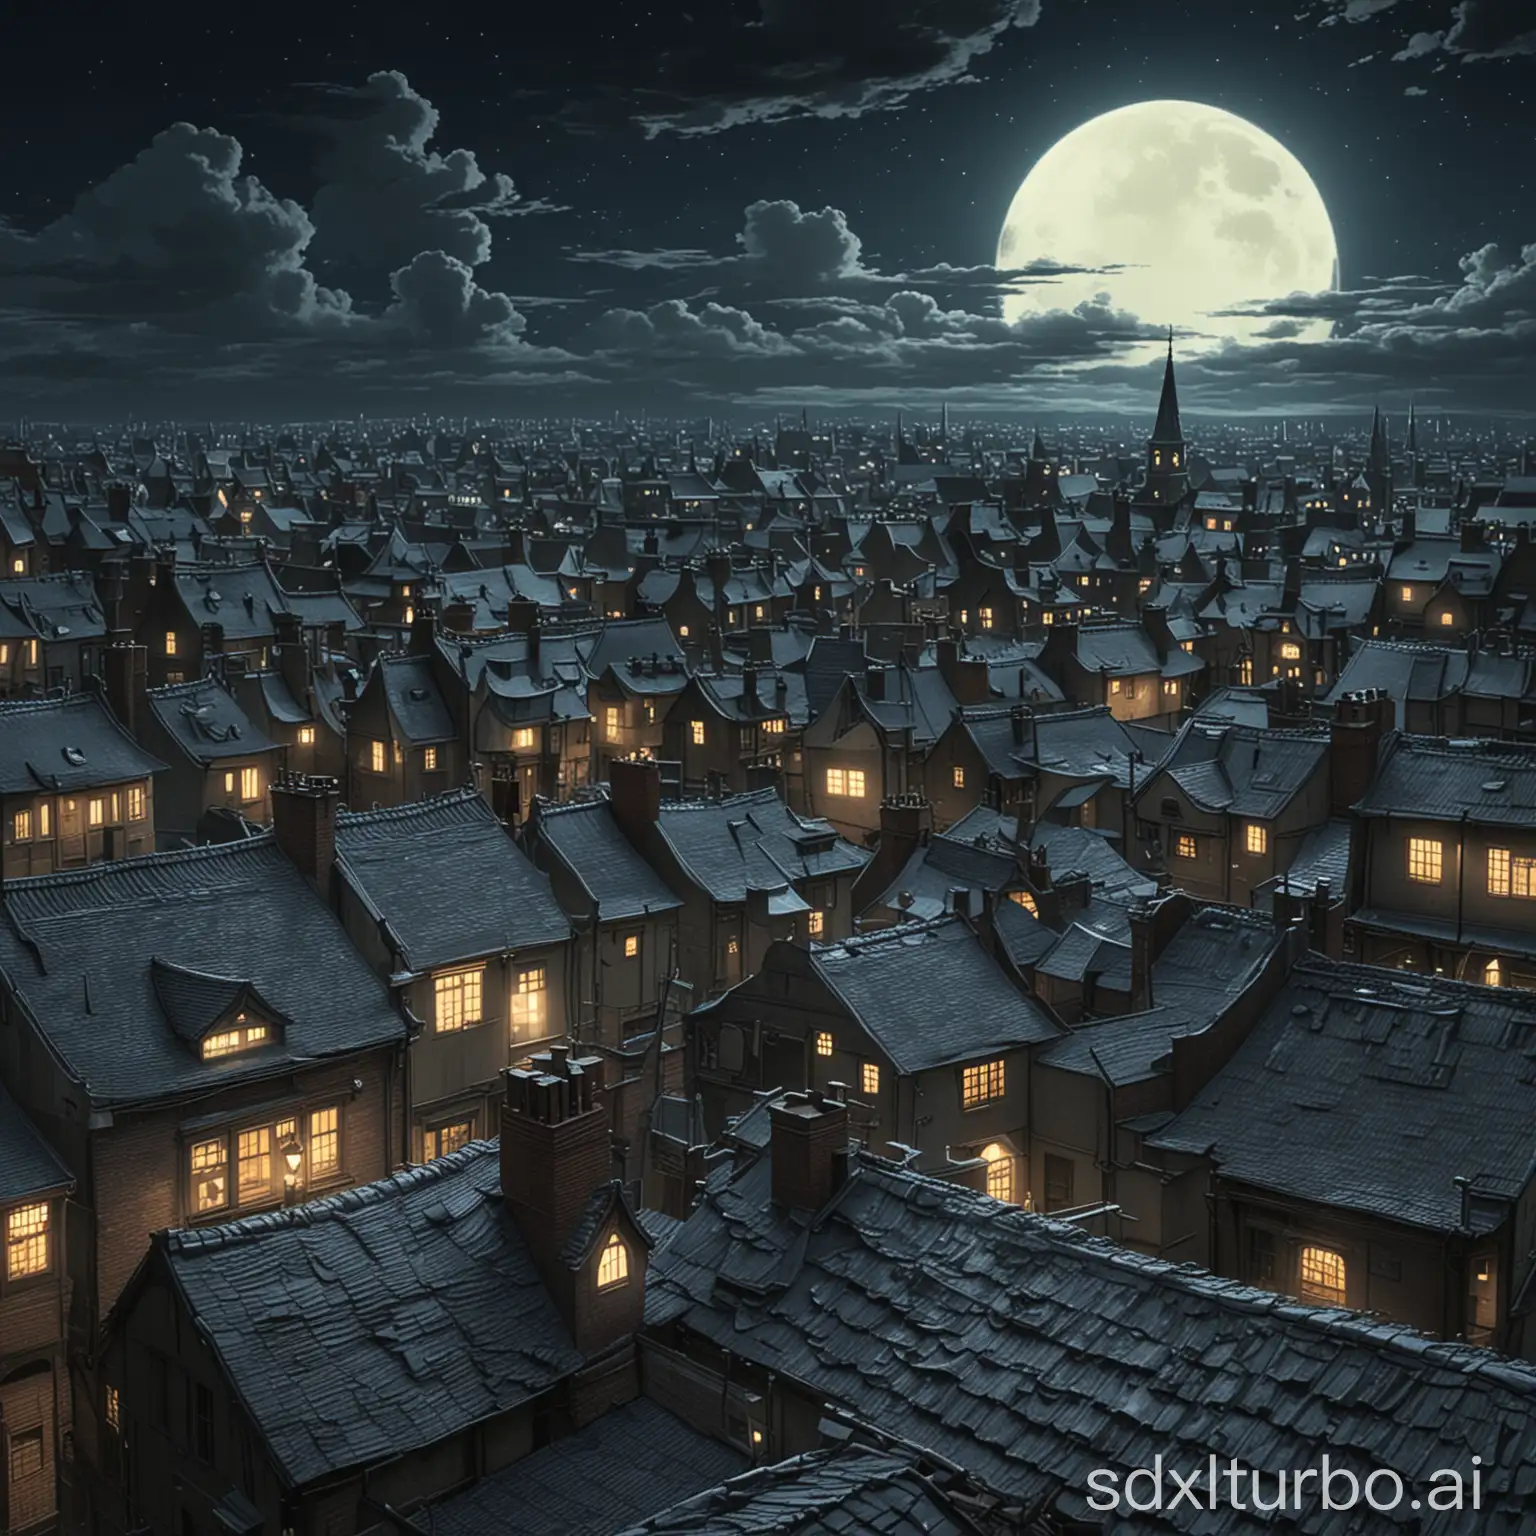 Victorian-Rooftop-Scene-Moonlit-Aerial-View-in-Studio-Ghibli-Style